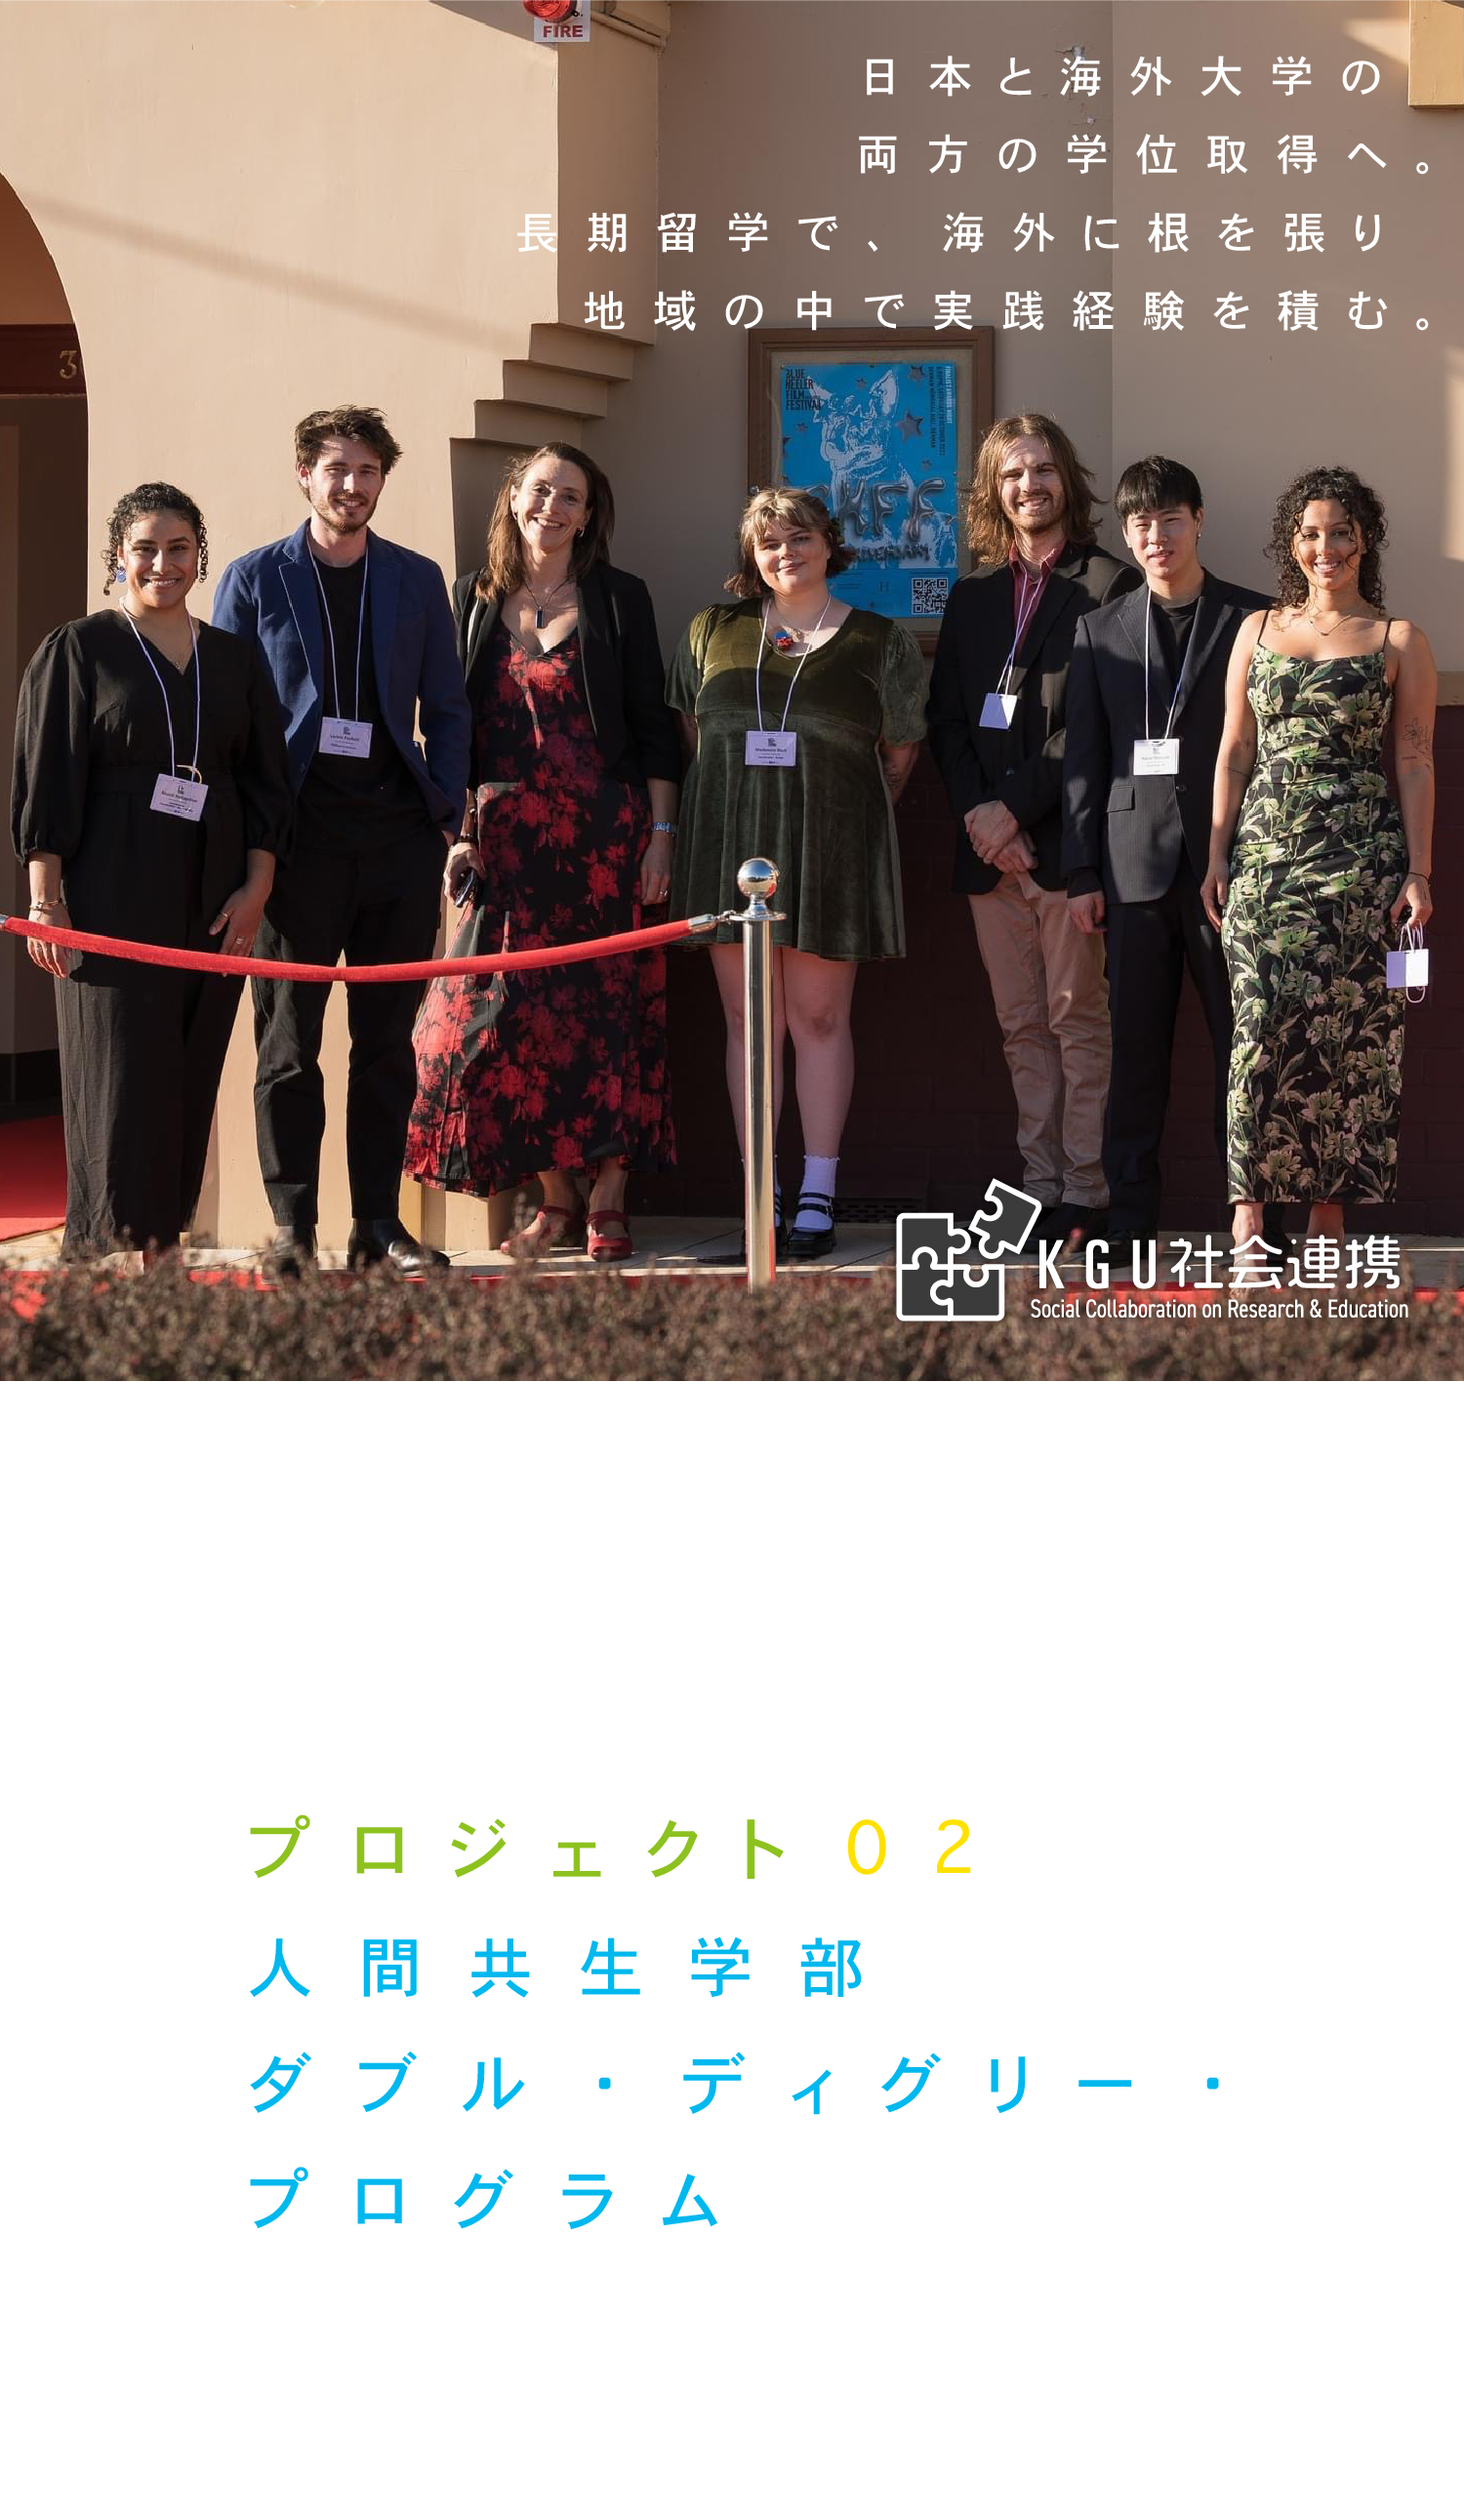 プロジェクト02 人間共生学部 ダブル・ディグリー・プログラム 日本と海外大学の両方の学位取得へ。長期留学で、海外に根を張り地域の中で実践経験を積む。